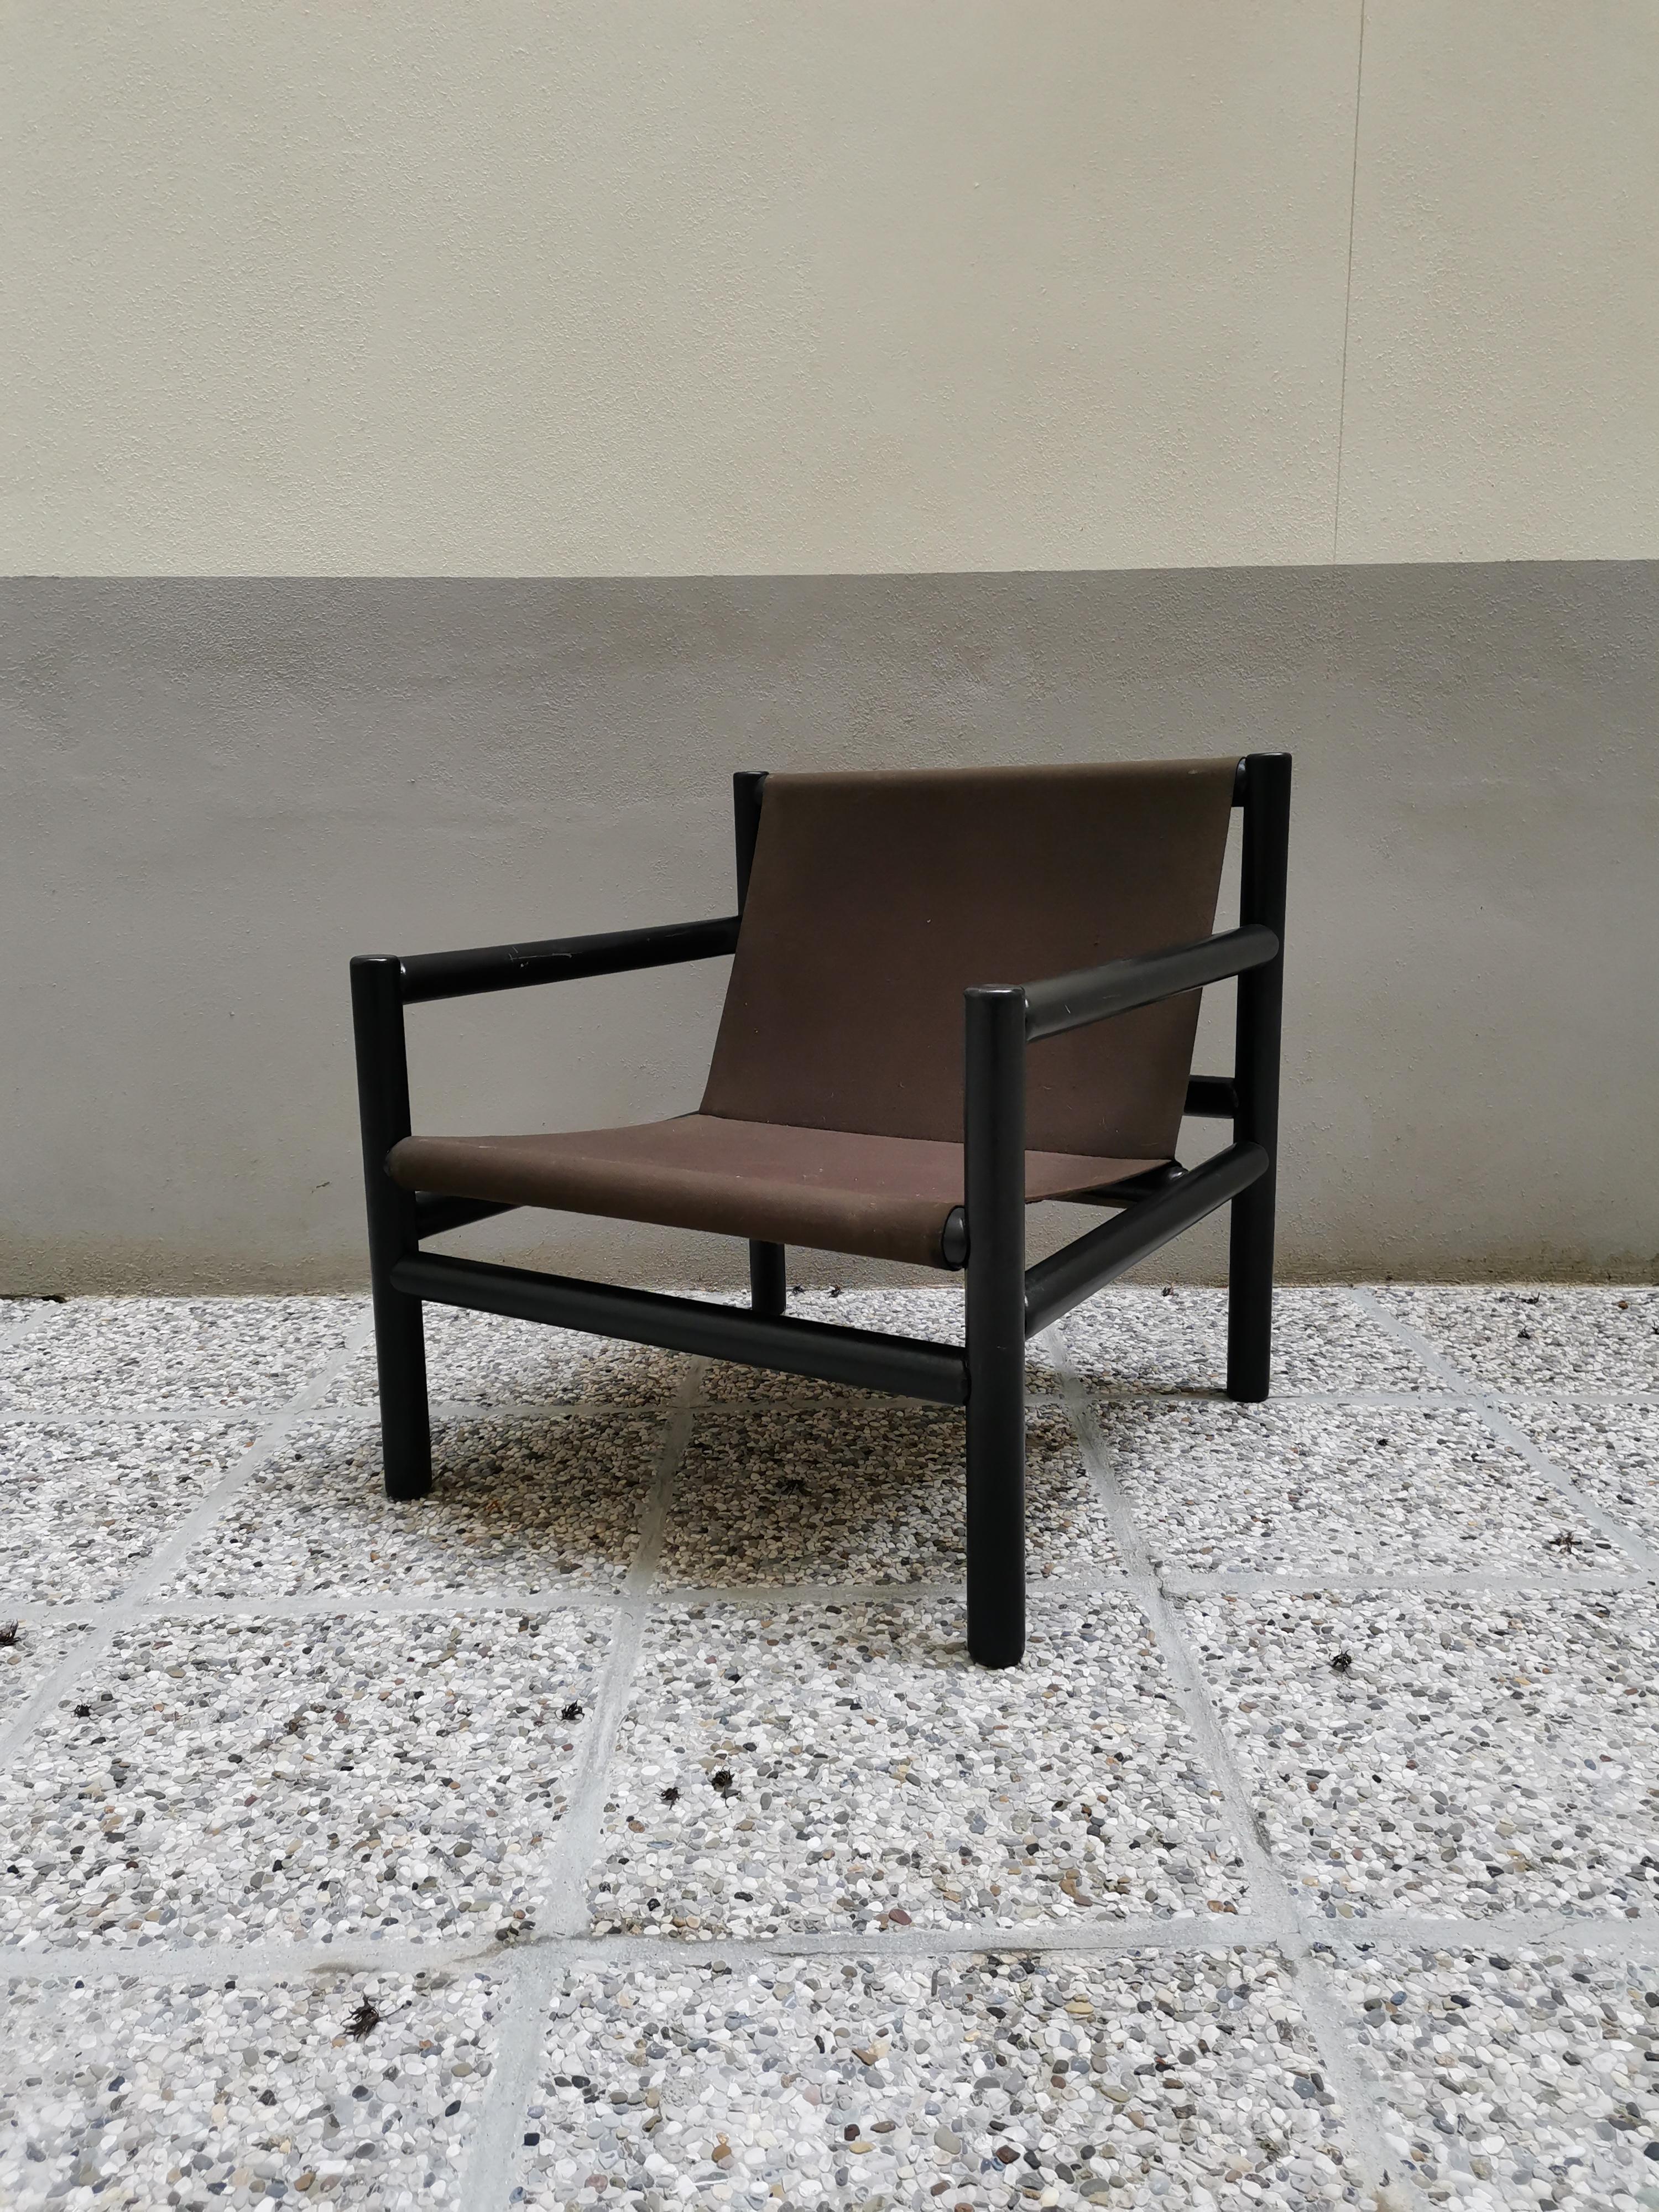 Sessel, hergestellt von Stol Kamnik, Designer Branko Uršič (selten), Slowenien. Alter: 1960er Jahre. Er besteht aus einem schwarz lackierten, glänzenden Holzrahmen und einem braunen Stoff. Der Stuhl wurde 1960 von dem slowenischen Designer Branko